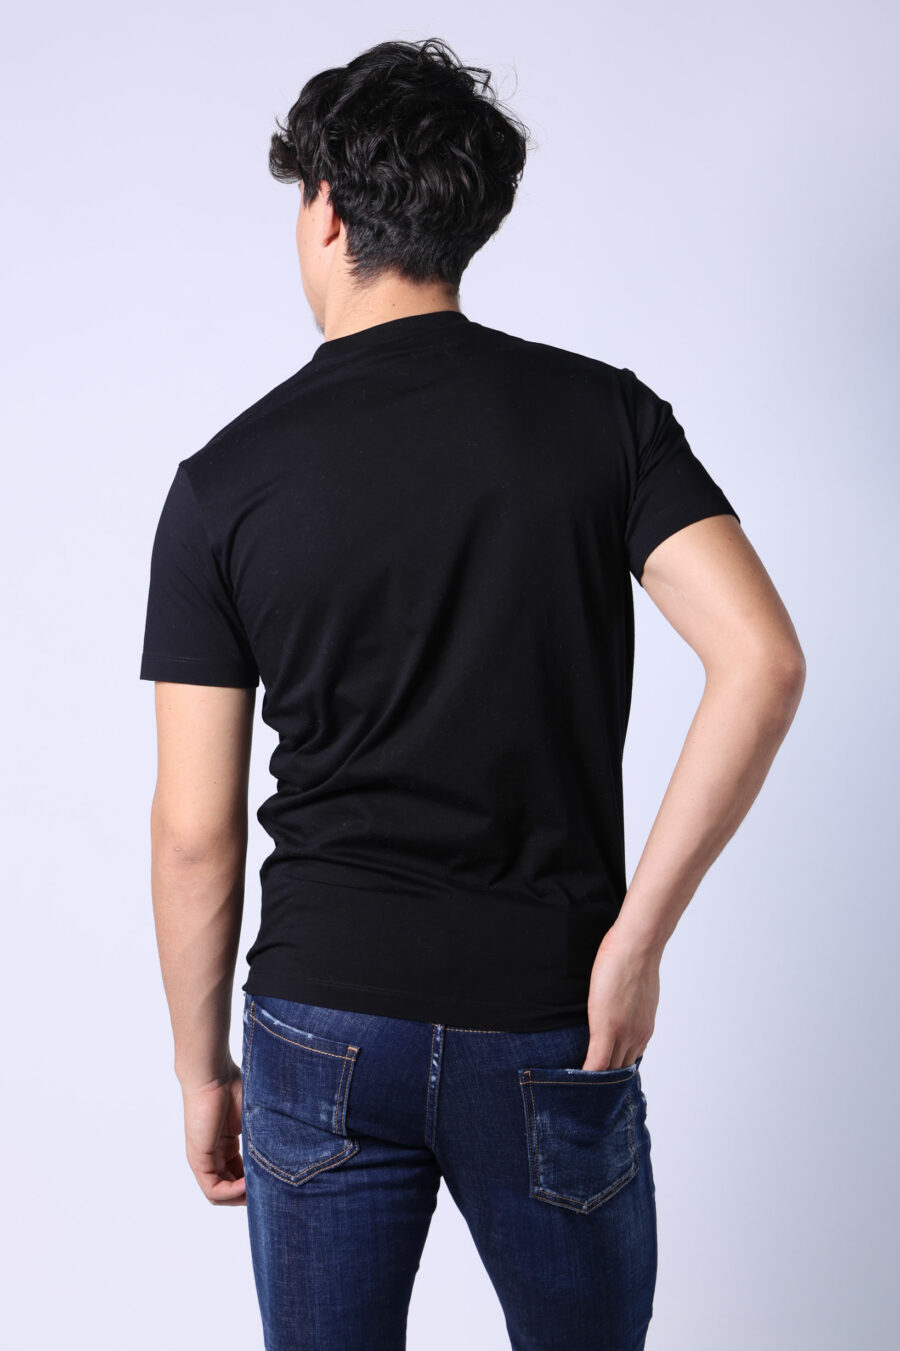 T-shirt preta com o logótipo "sitckers" maxi - Untitled Catalog 05495